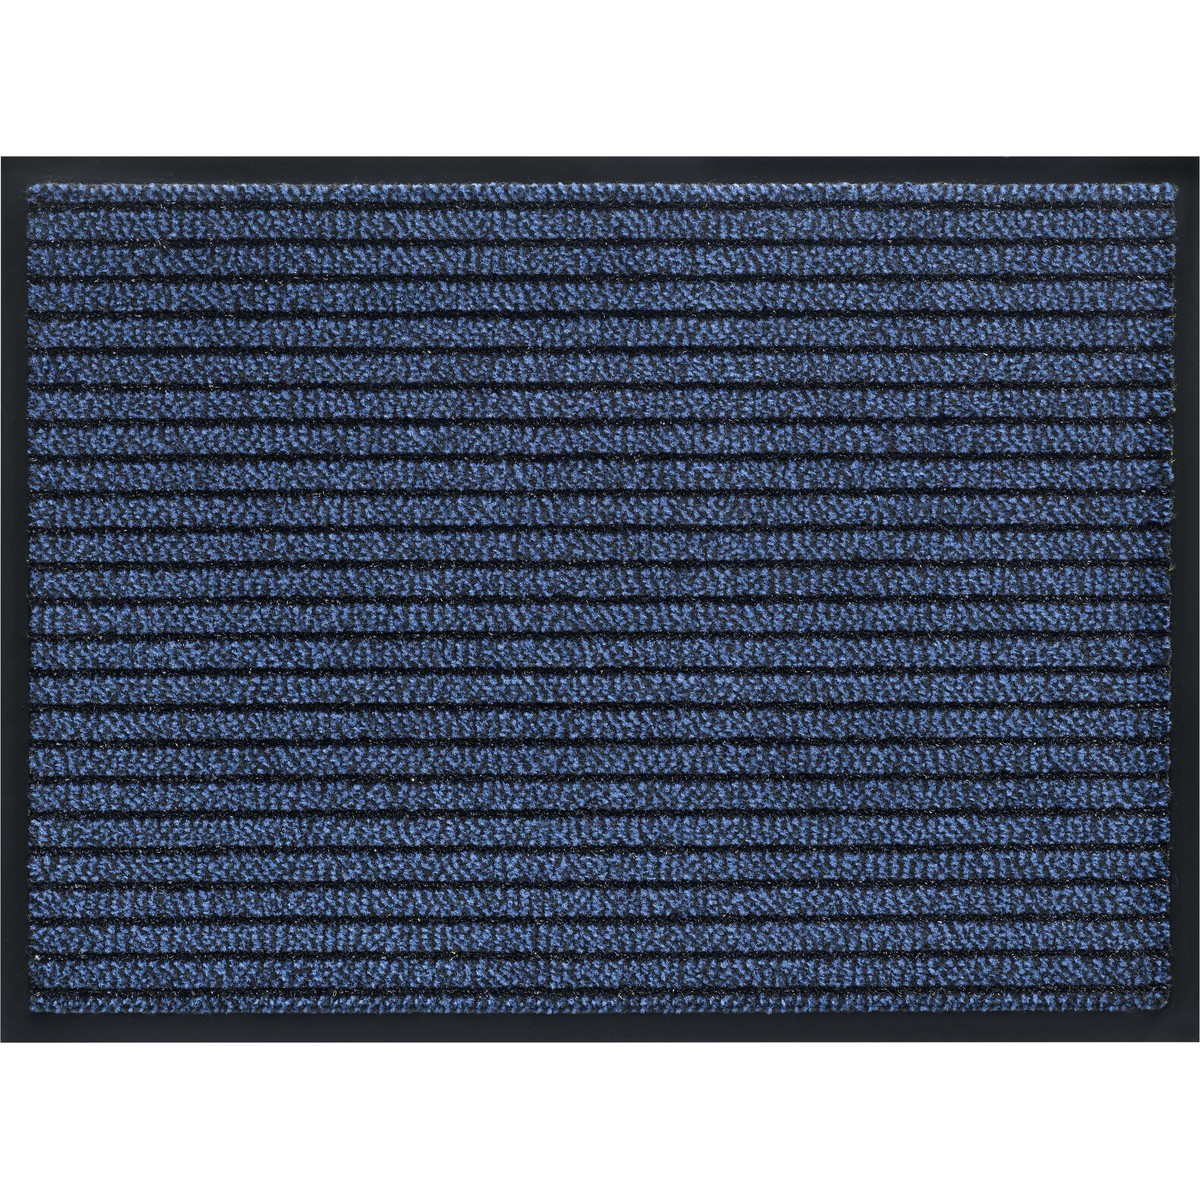   Paillasson Gramat bleu  40x60cm